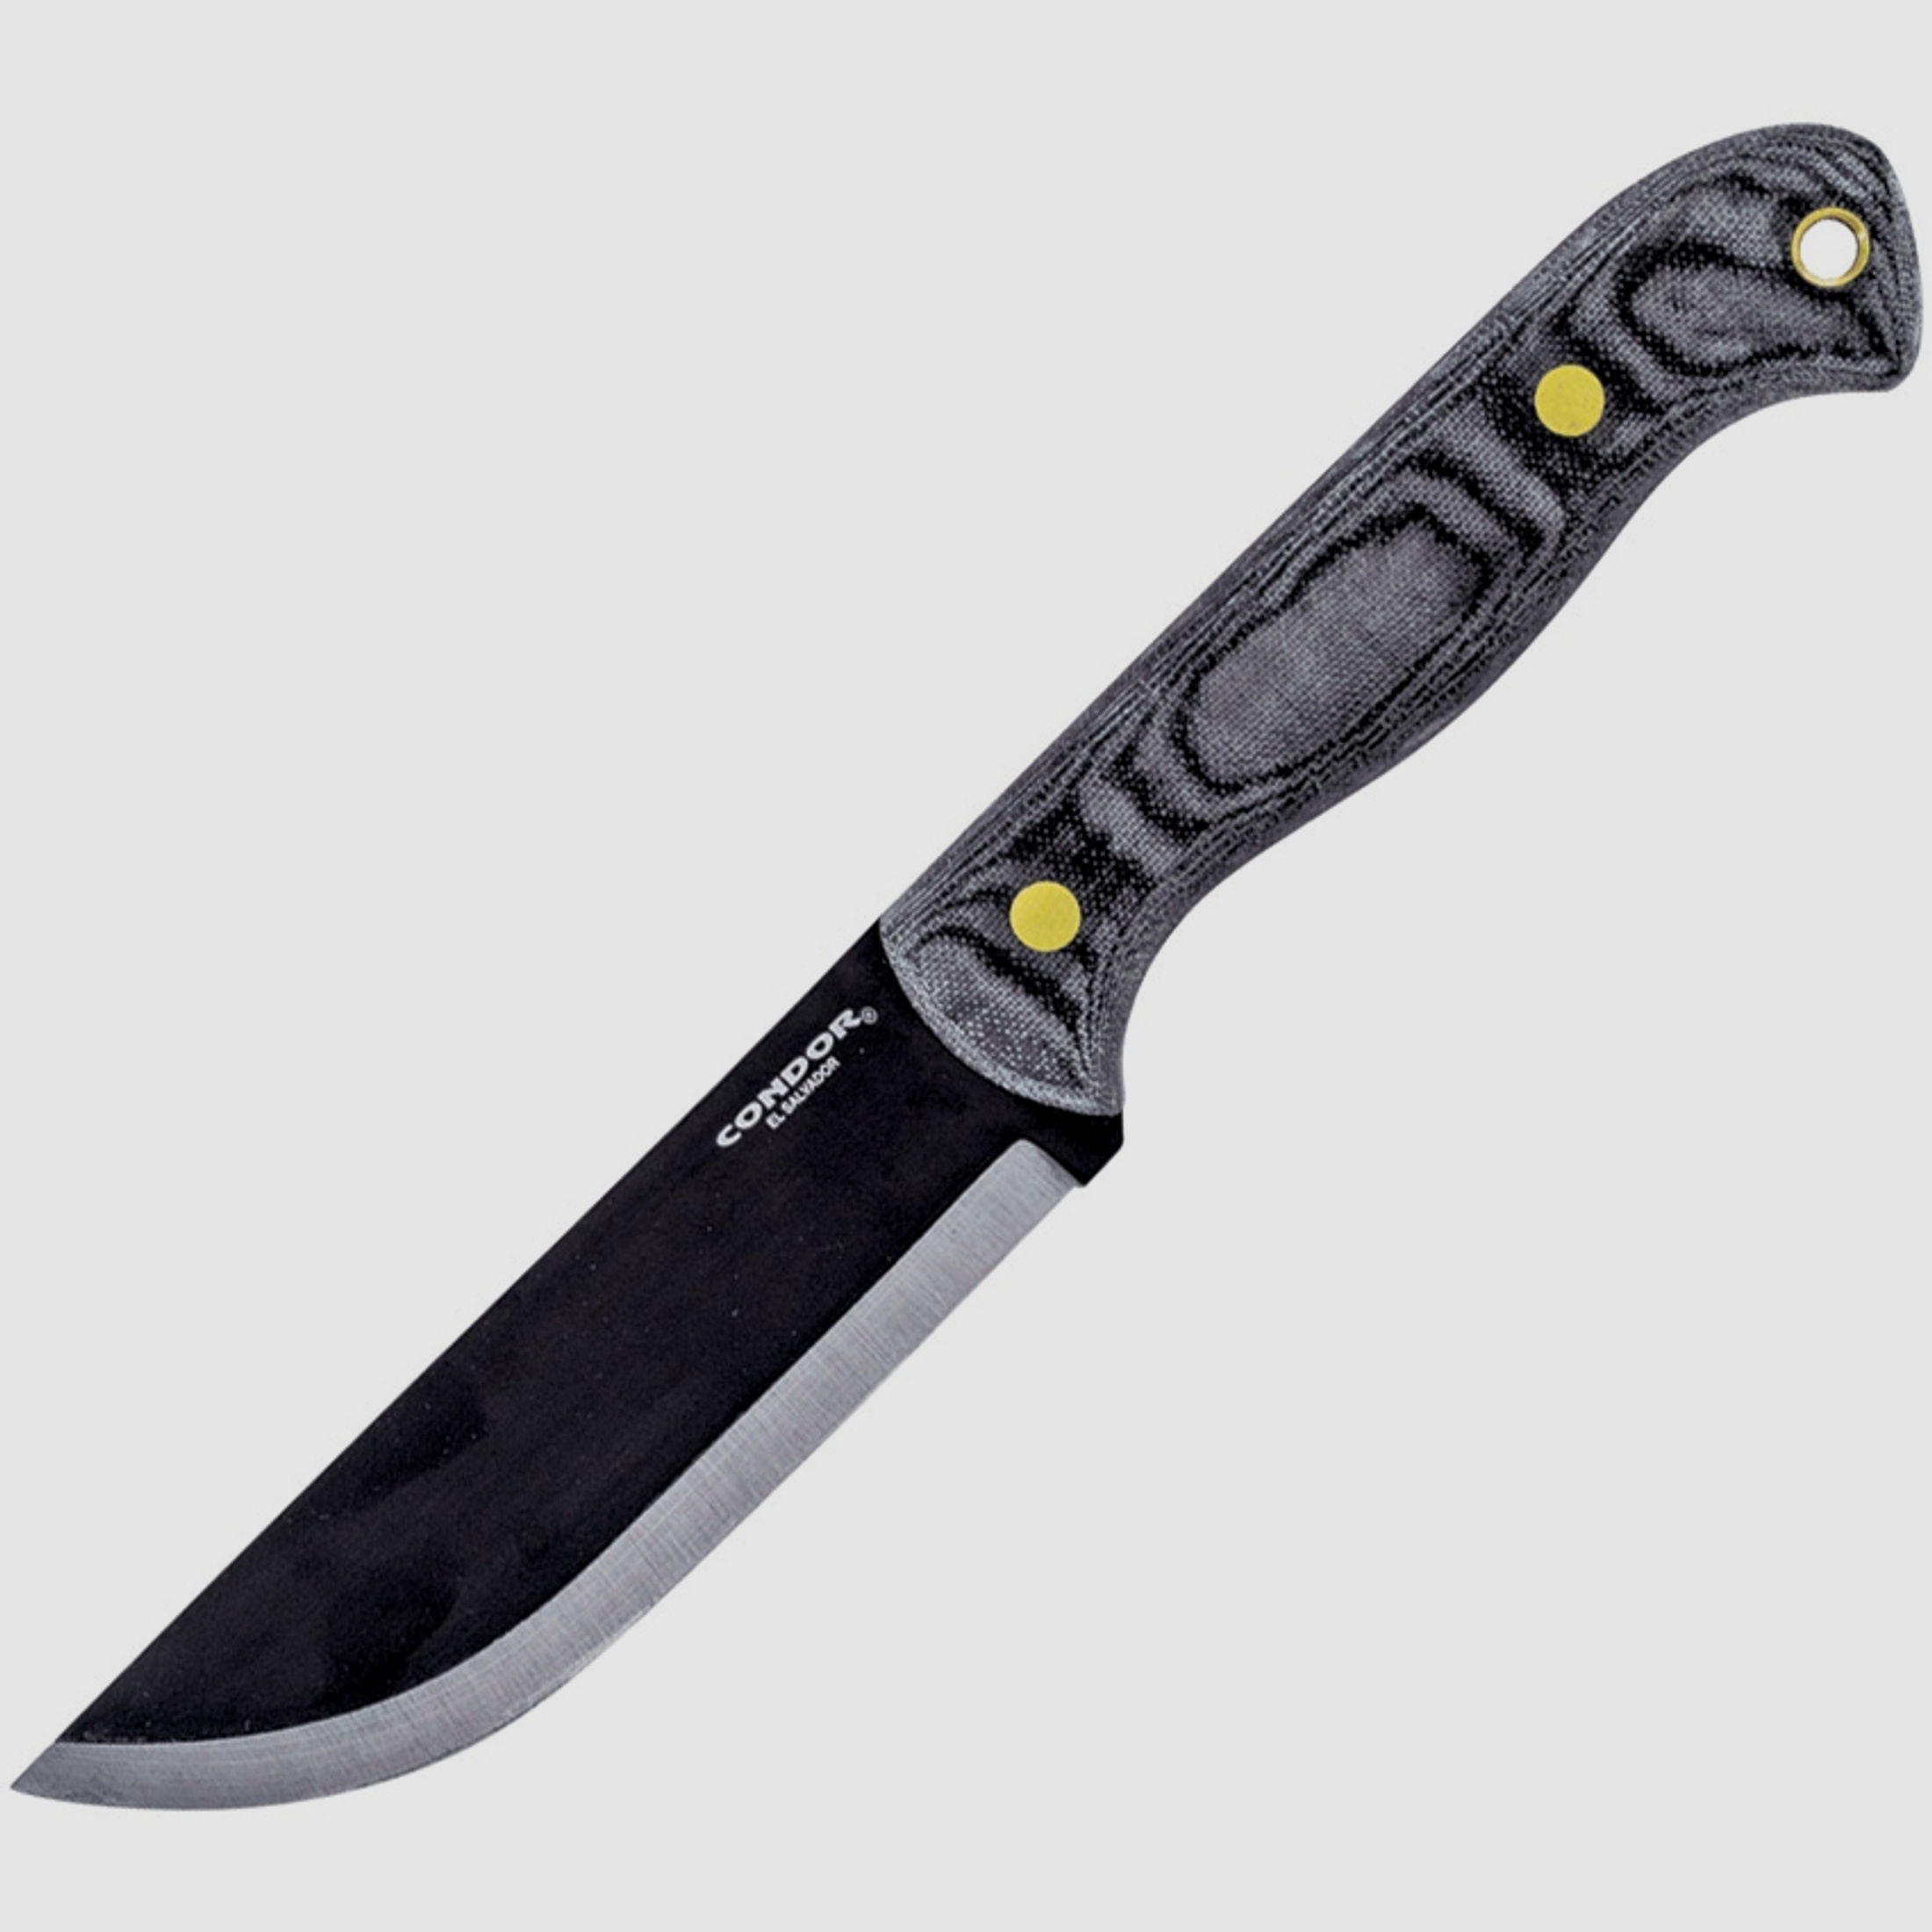 SBK Messer (Messer mit geradem Rücken) | 89808